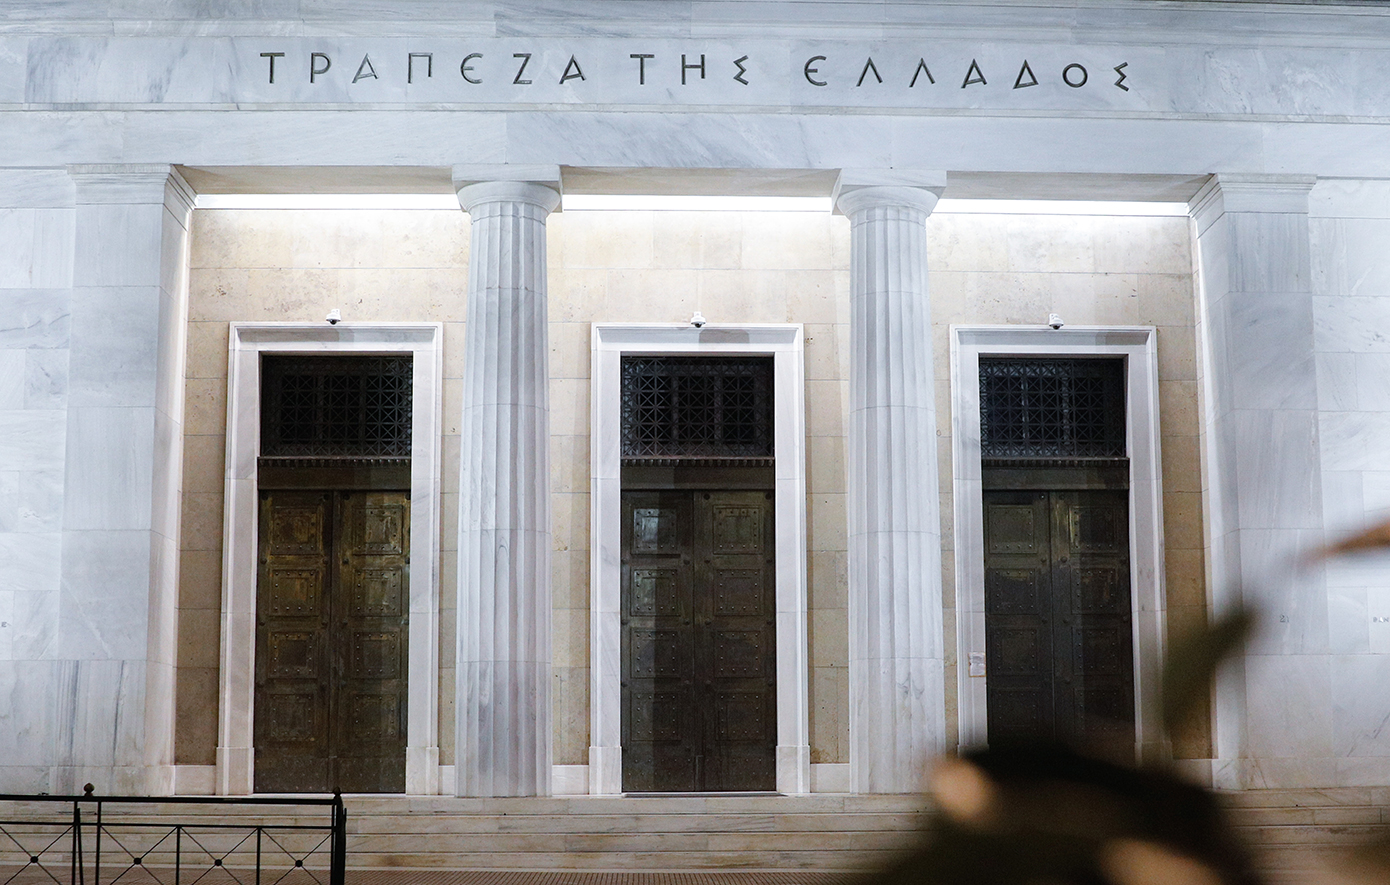 Τράπεζα της Ελλάδος προς servicers: Οι φάκελοί σας είναι ελλιπείς για να λάβετε επαναδειοδότηση λειτουργίας